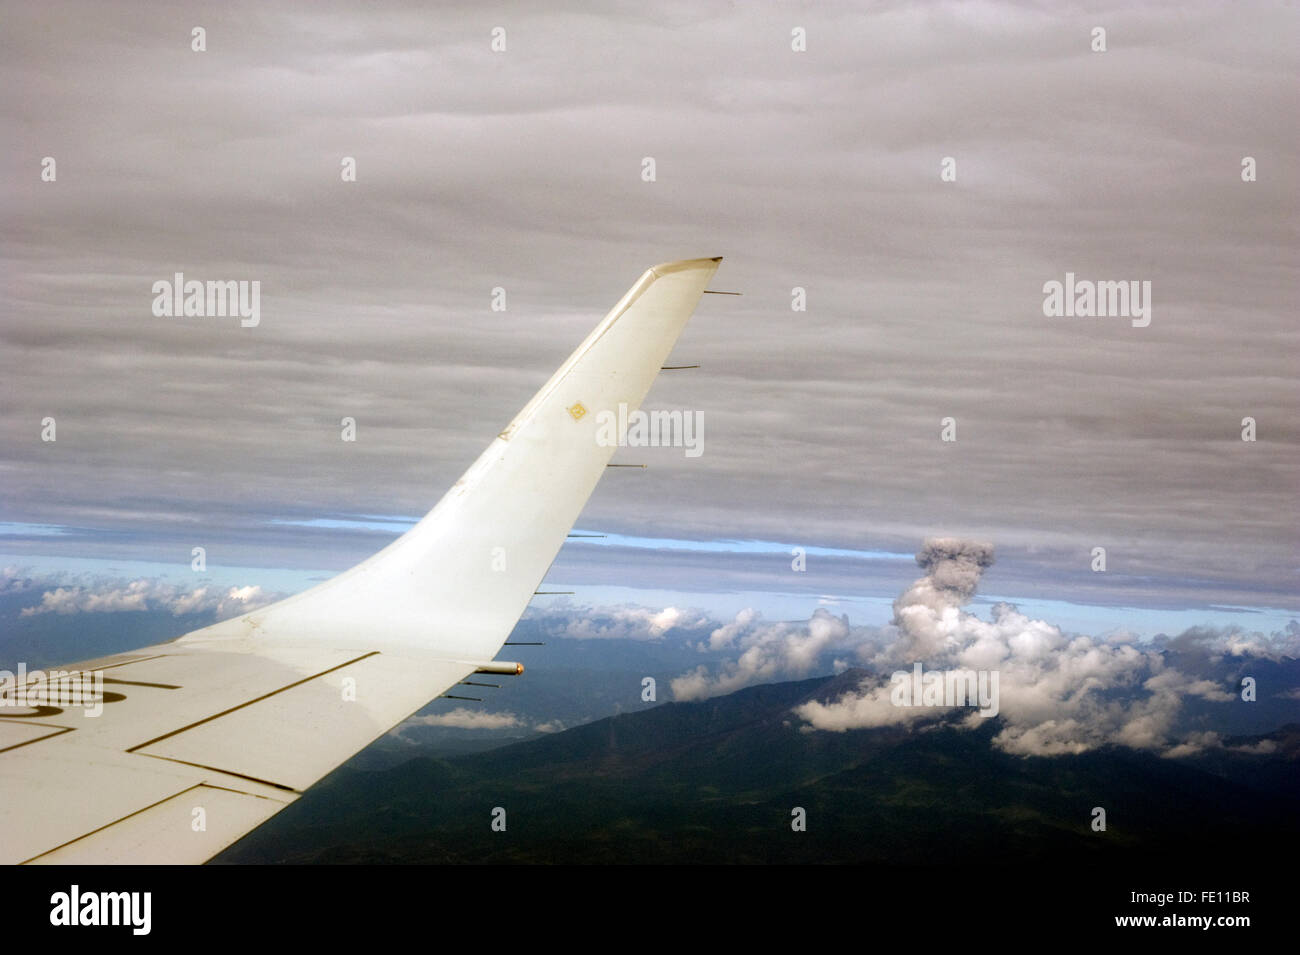 Rauchfahne vom Vulkan in Ecuador vom Flugzeug aus gesehen Stockfoto